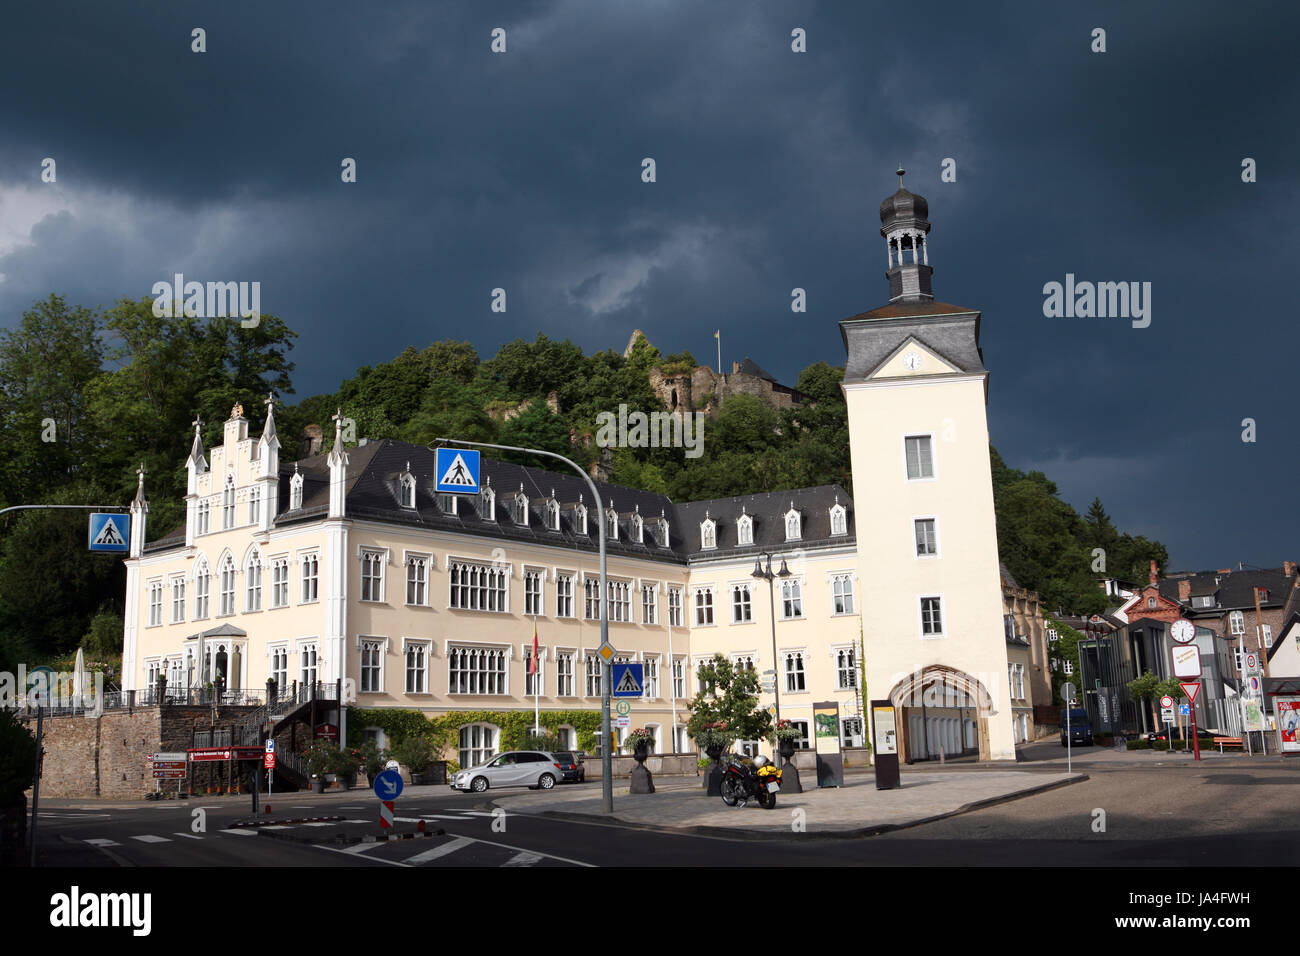 Turm, historische, Deutschland, Bundesrepublik Deutschland, Ruine, Fassade, Stockfoto